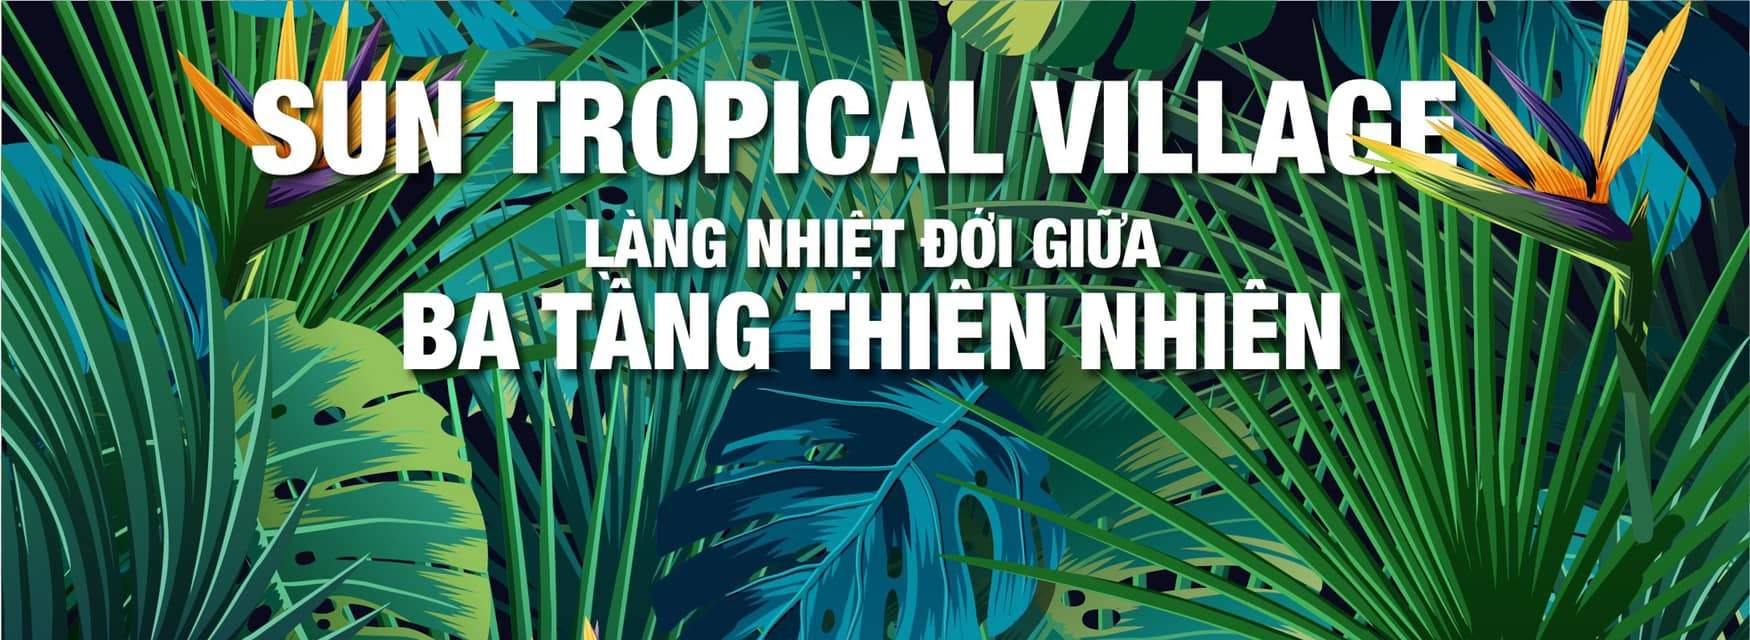 Sun Tropical Village - Làng nhiệt đới giữa ba tầng thiên nhiên